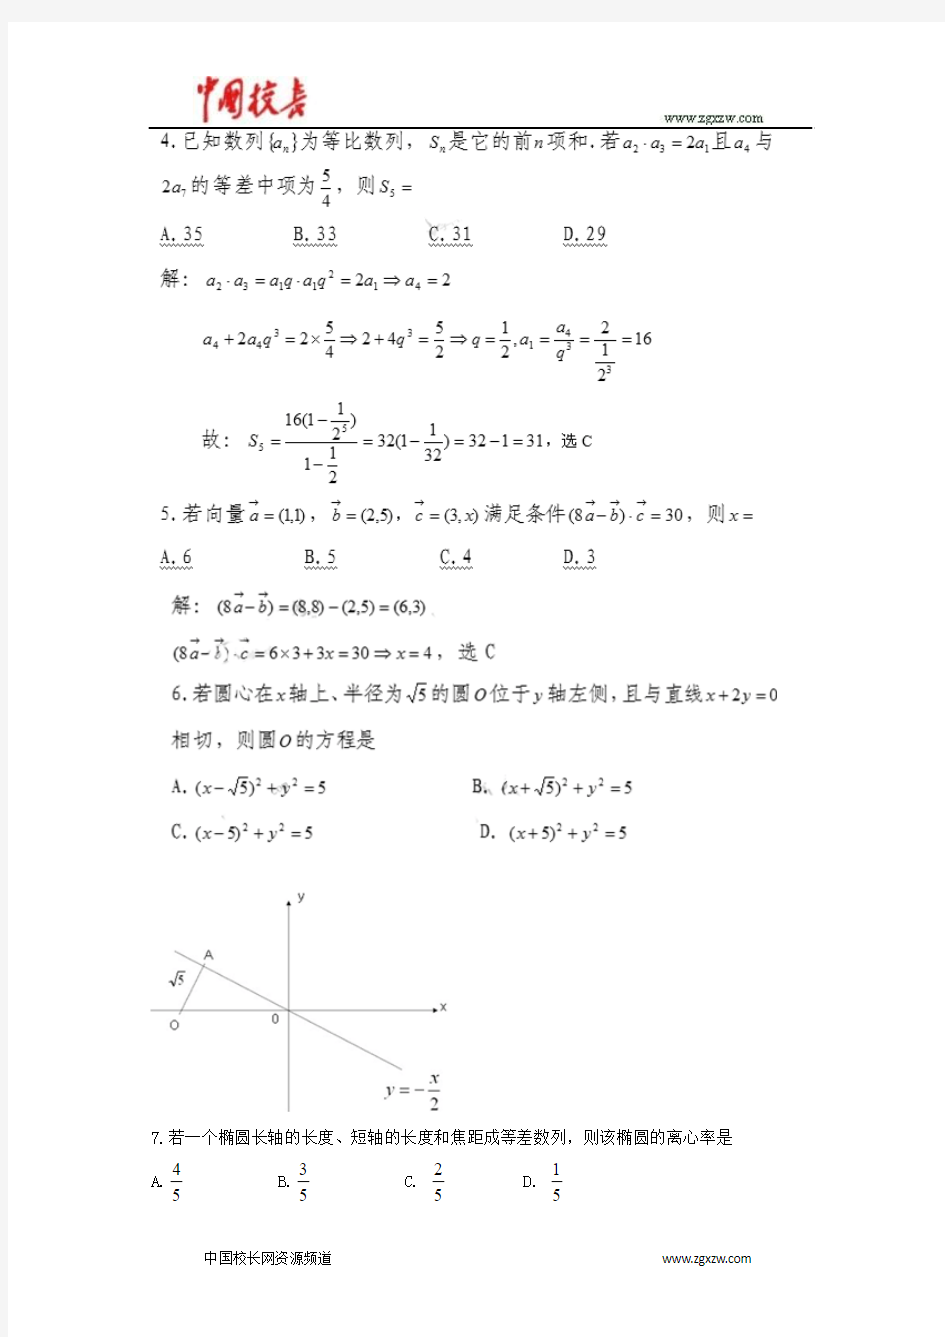 2010年全国高考文科数学试题及答案-广东